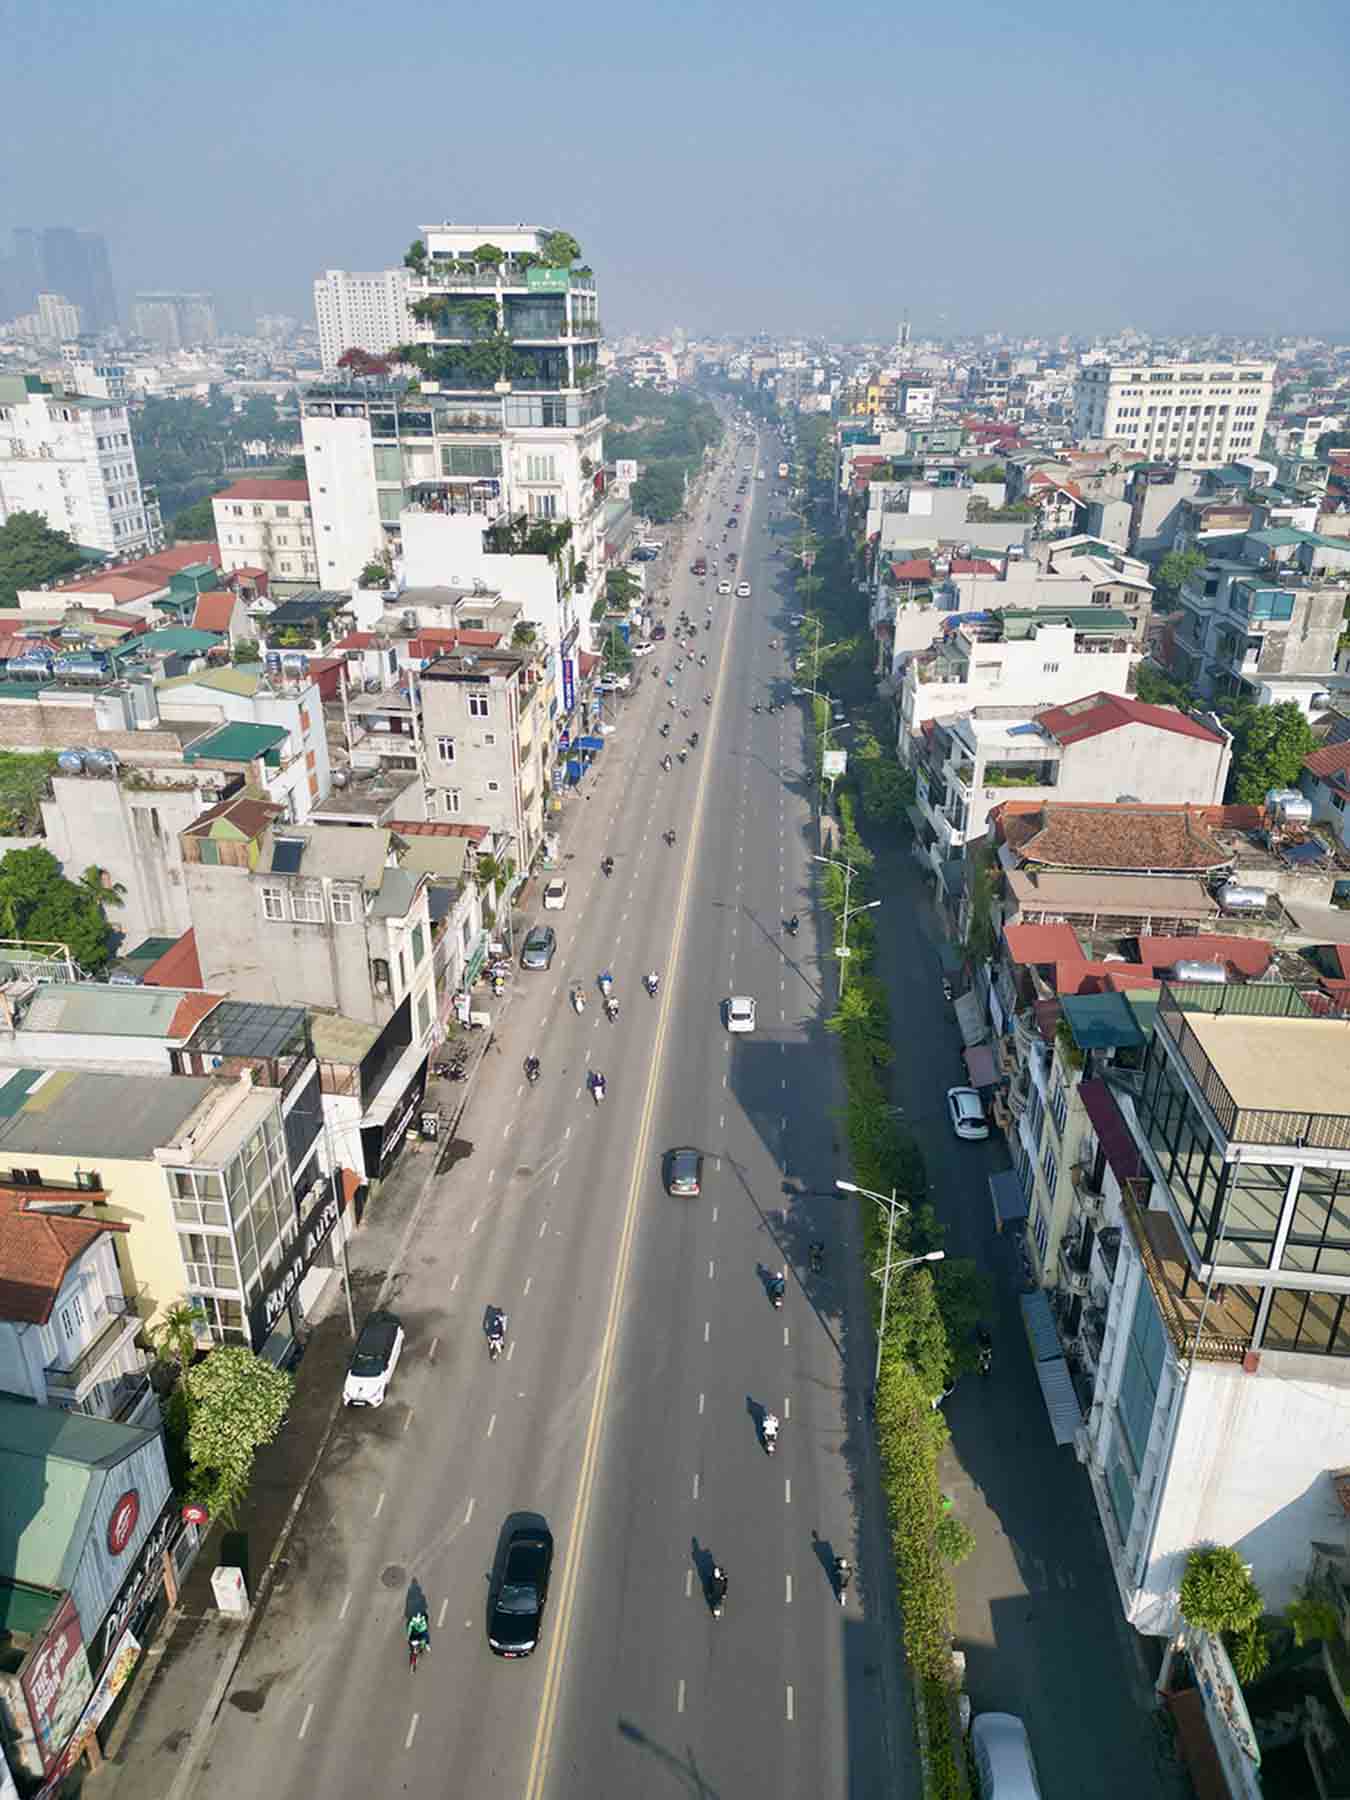 Một góc đường Nghi Tàm (từ khách sạn Thắng Lợi đến cửa khẩu An Dương) sau khi xây cầu vượt và điều chỉnh kết cấu đê dài khoảng 1,1 km đã hoàn thành giai đoạn 1 và đưa vào sử dụng từ tháng 10.2018.